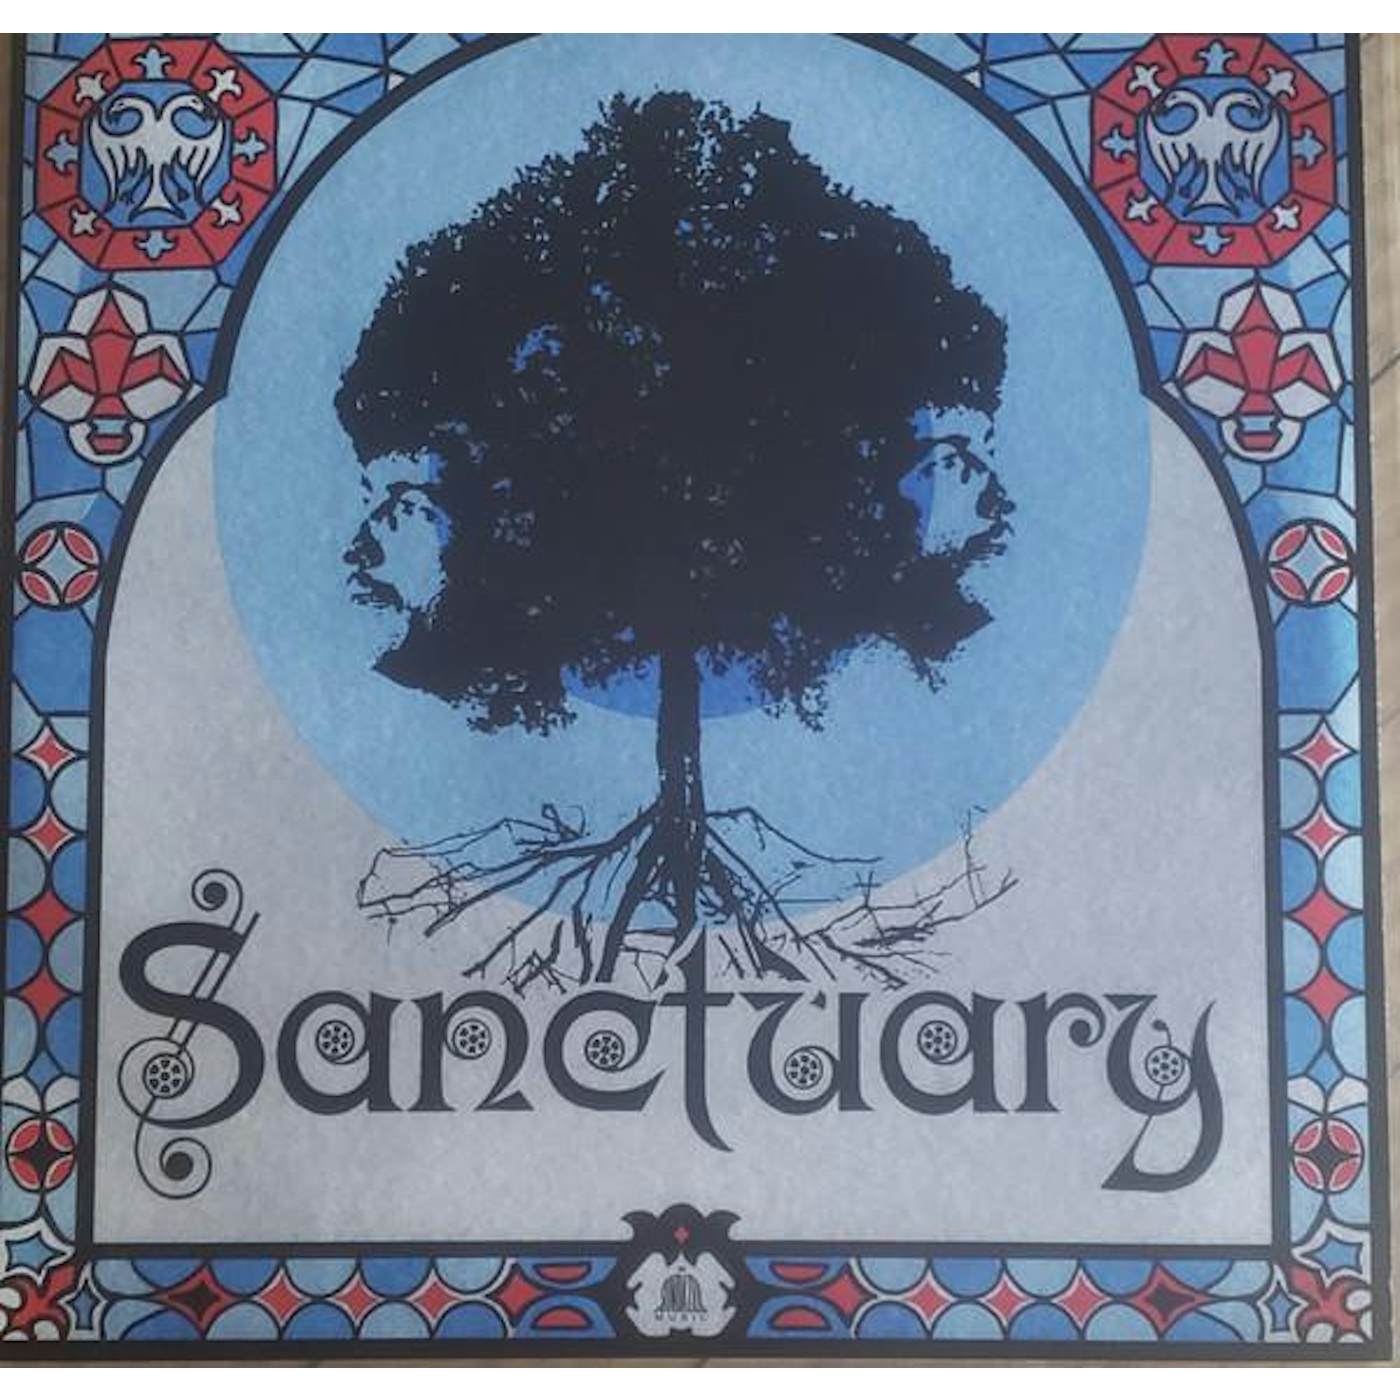 SANCTUARY (CLEAR VINYL) Vinyl Record